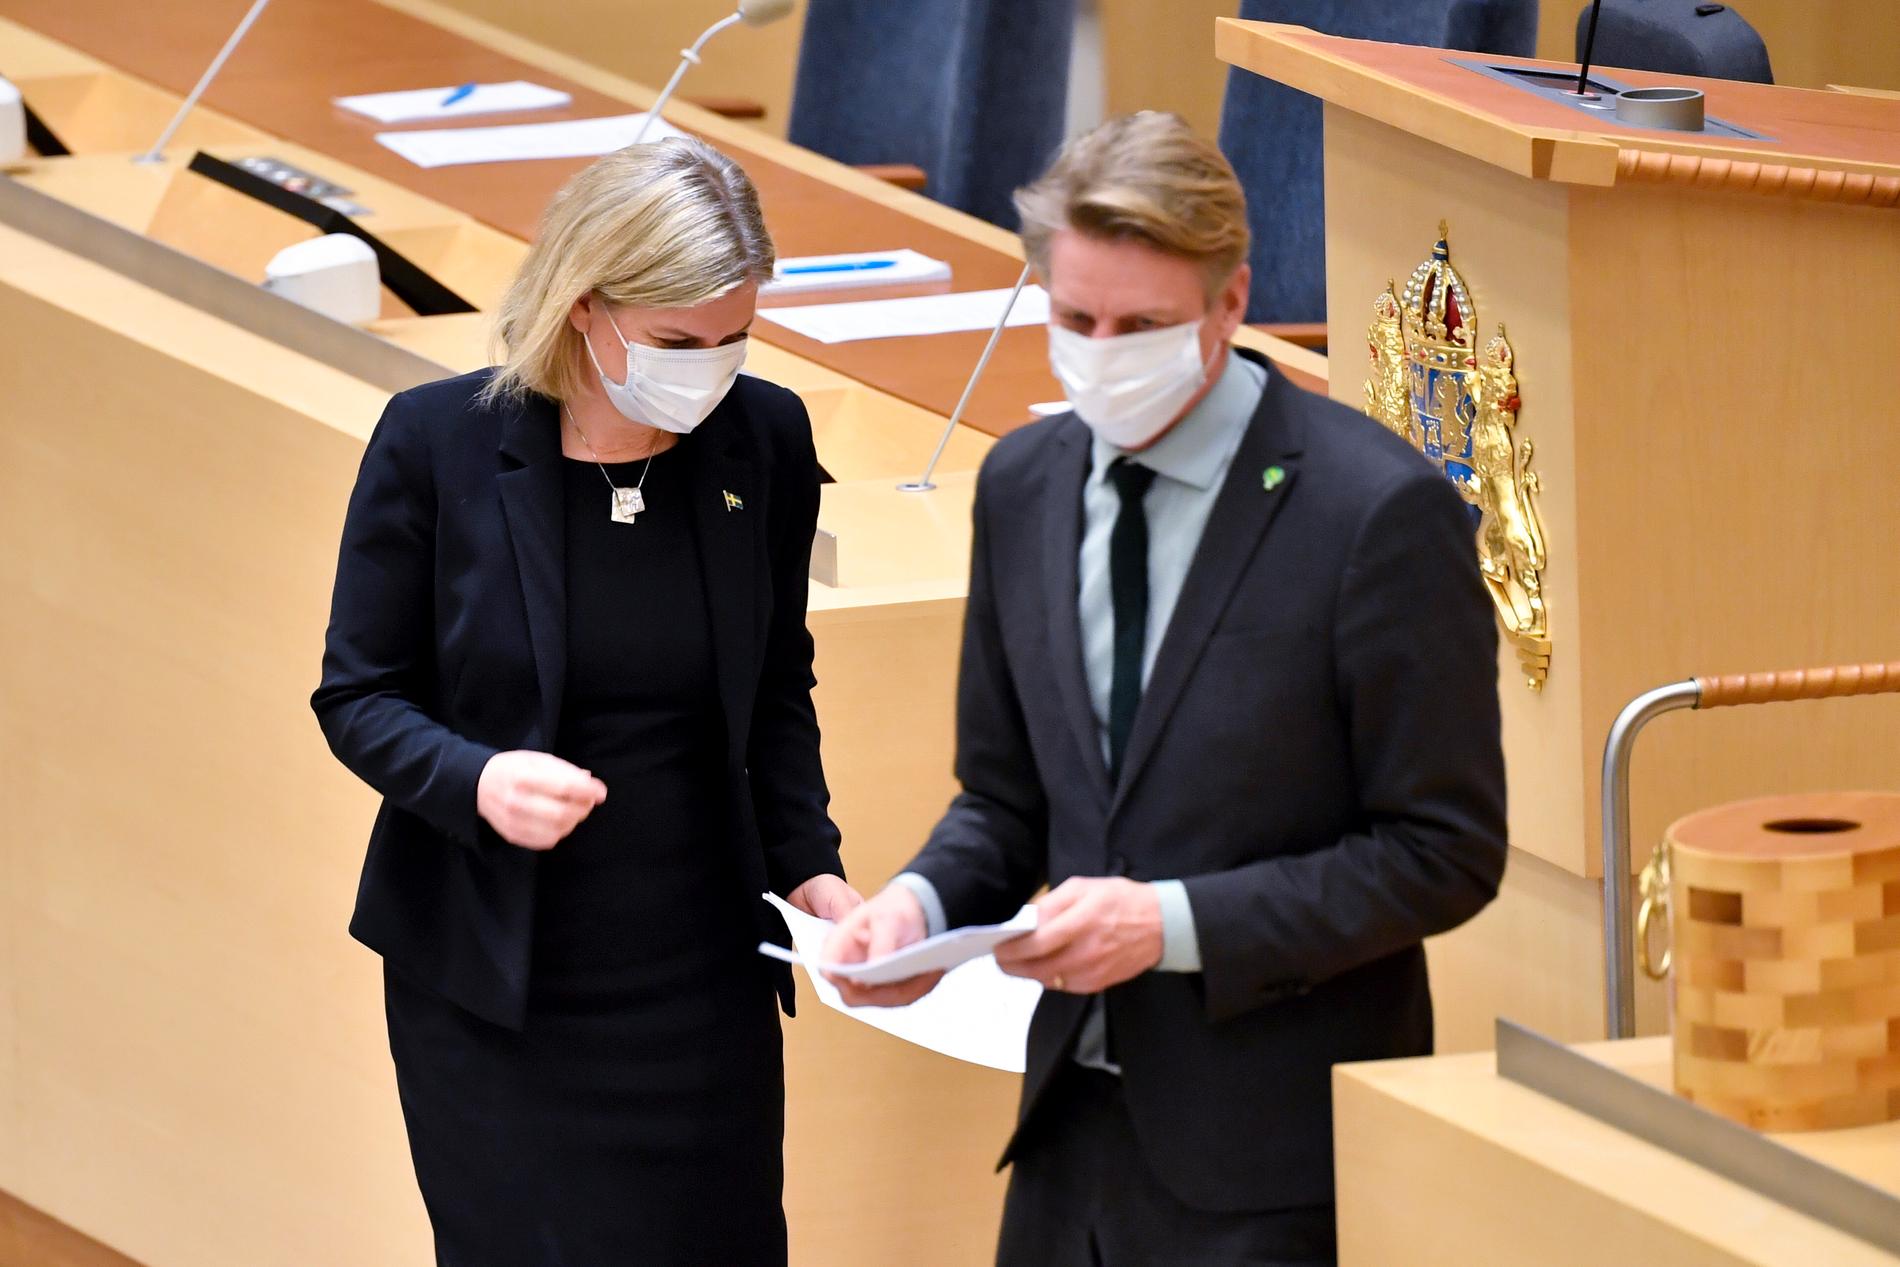 Socialdemokraternas partiledare Magdalena Andersson (S) och Miljöpartiets språkrör Per Bolund (MP) under dagens partiledardebatt i riksdagen. Båda är nu smittade med covid-19.